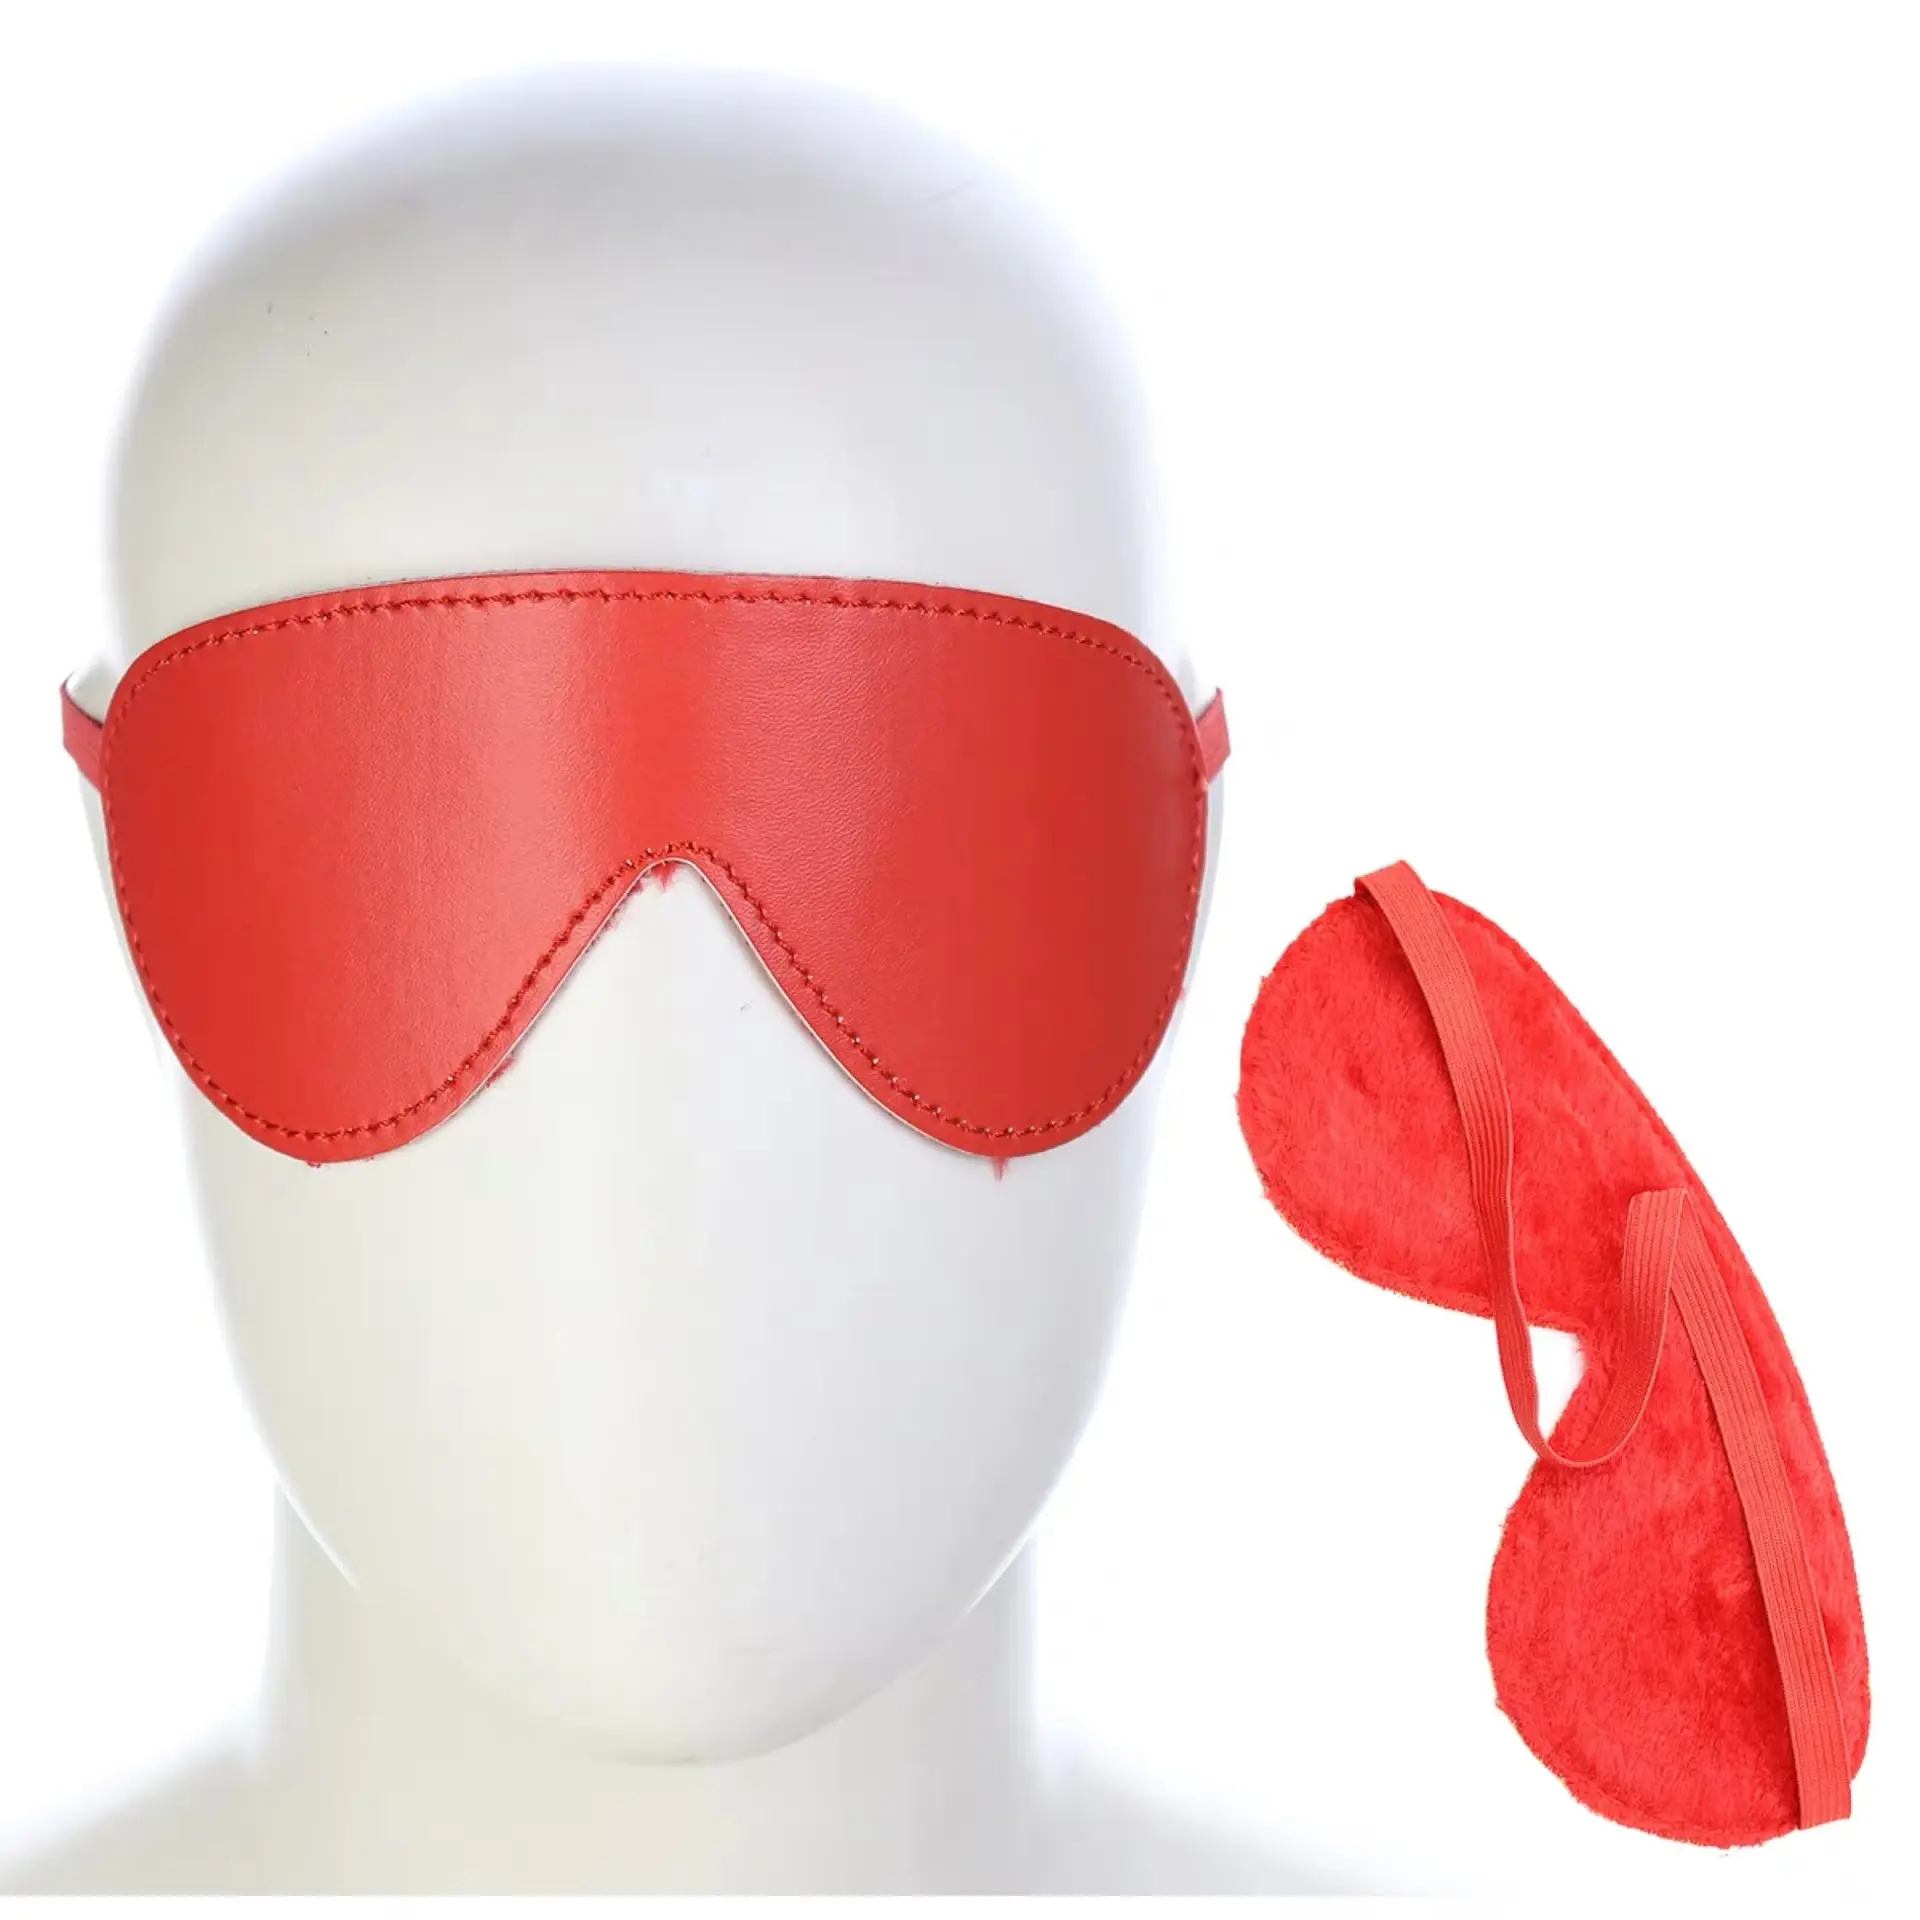 Более дешевая кожаная меховая Фетиш маска для глаз БДСМ Для Взрослых SM раб экзотическая маска для косплея секс-игра стимул EyeMask оптовая продажа секс-игрушки